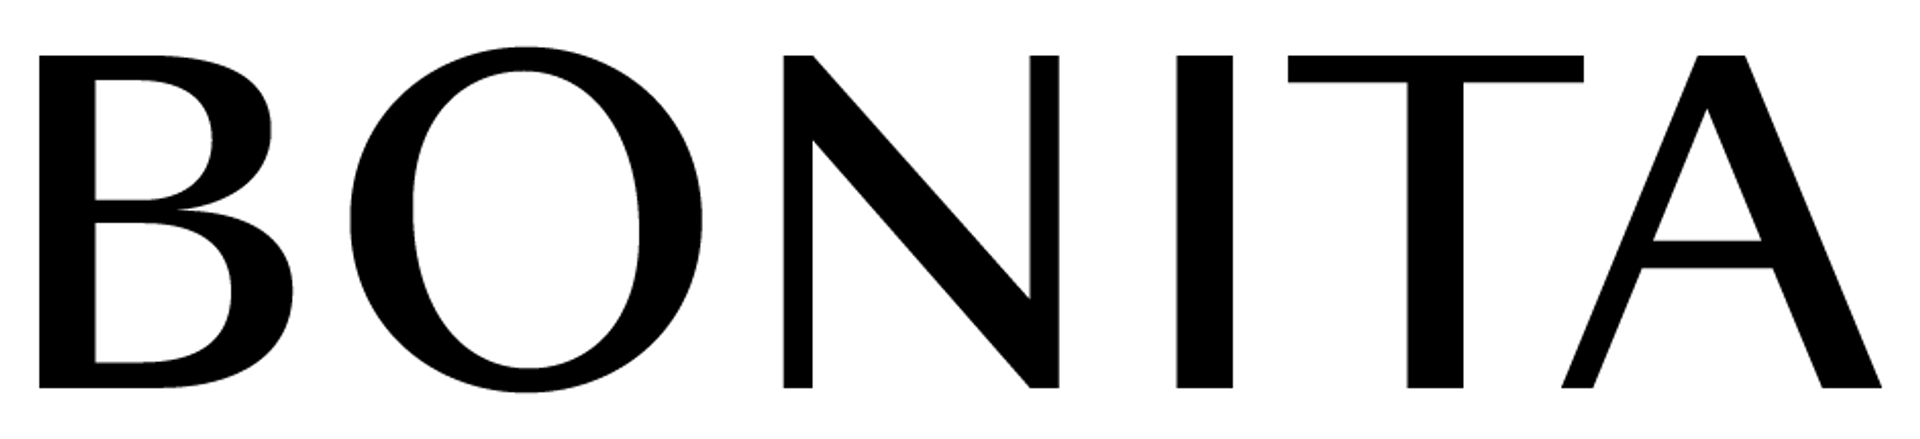 BONITA logo die aktuell Flugblatt